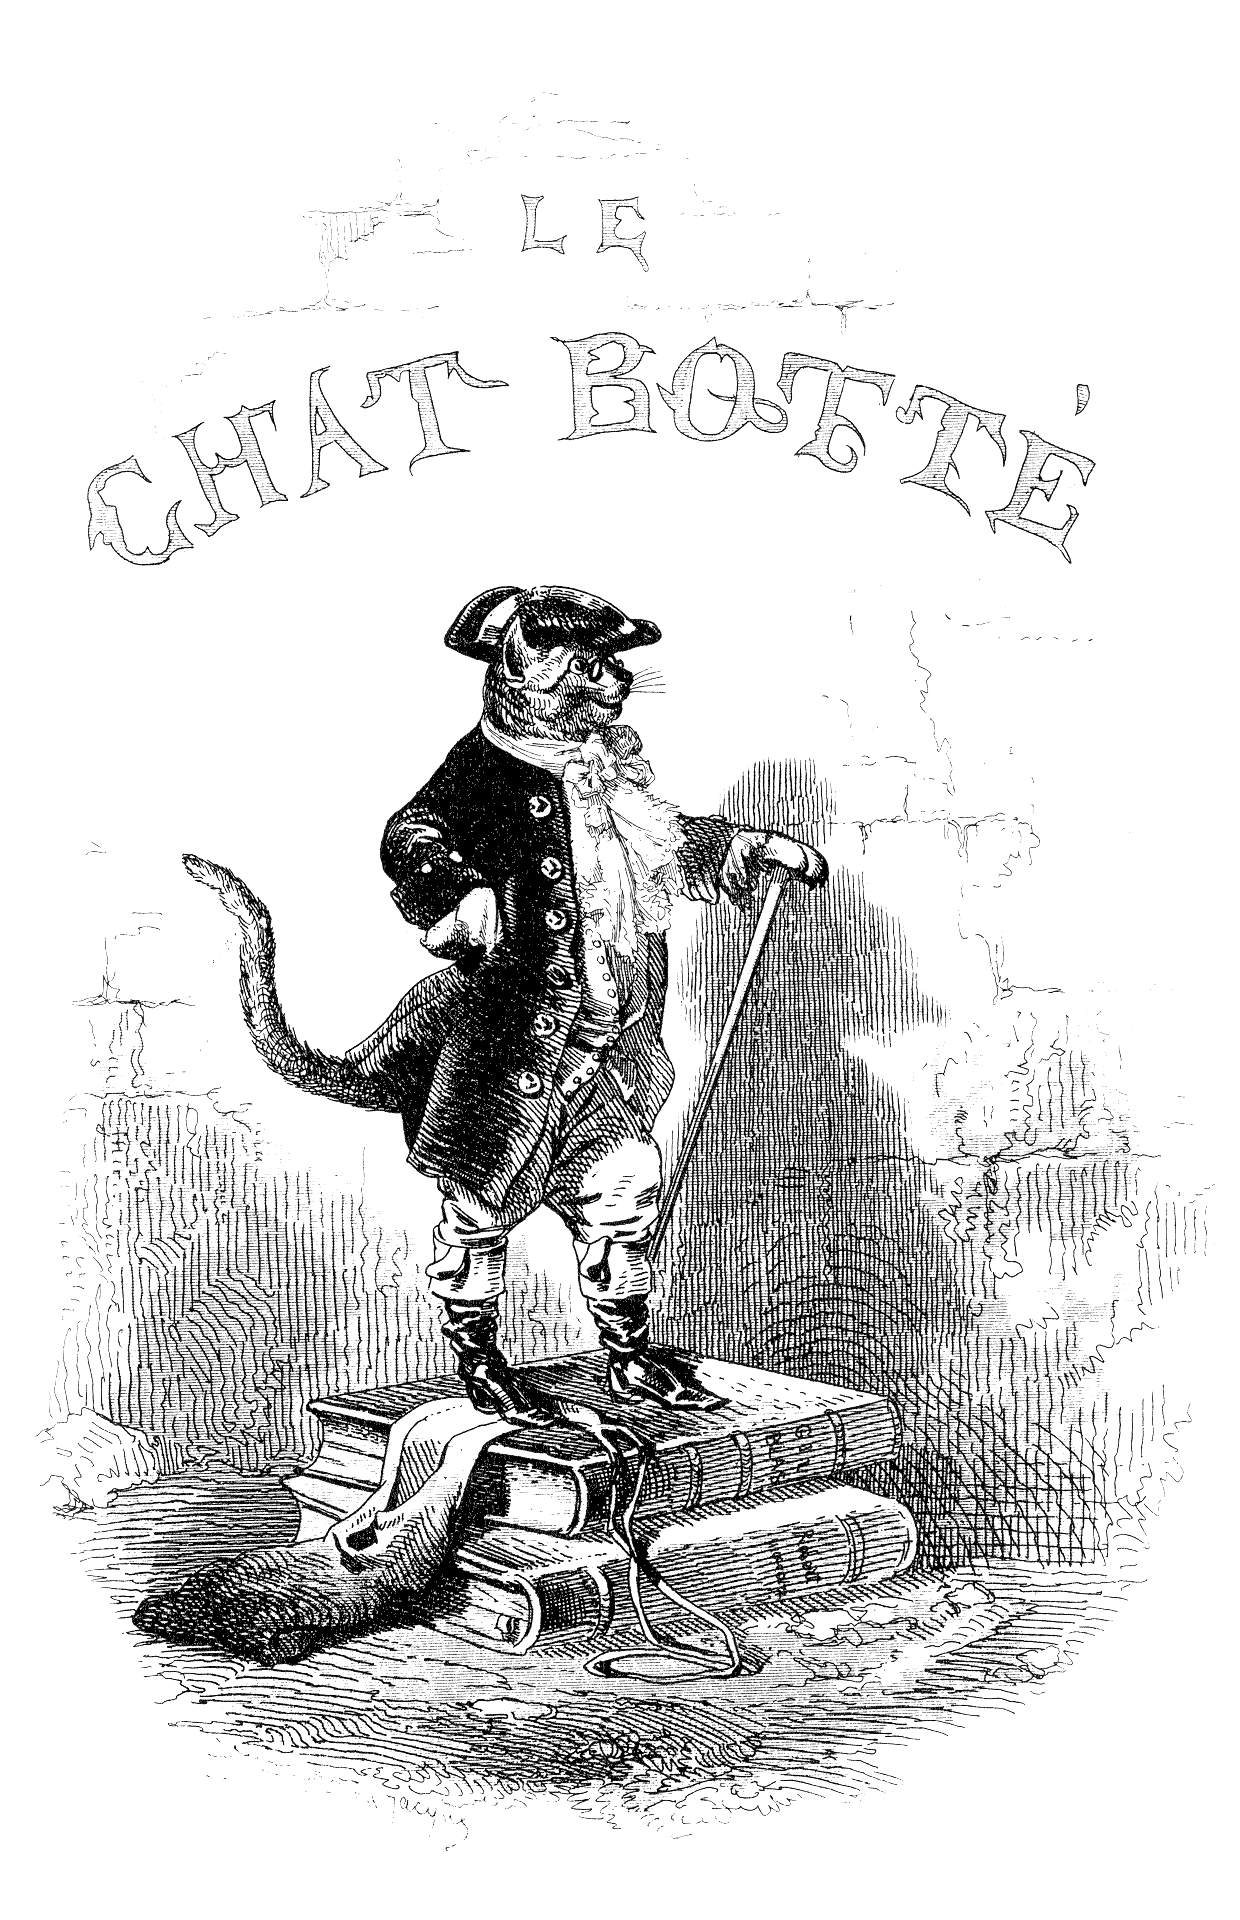 Cover of Contes de temps passé, 1843, showing Puss in Boots